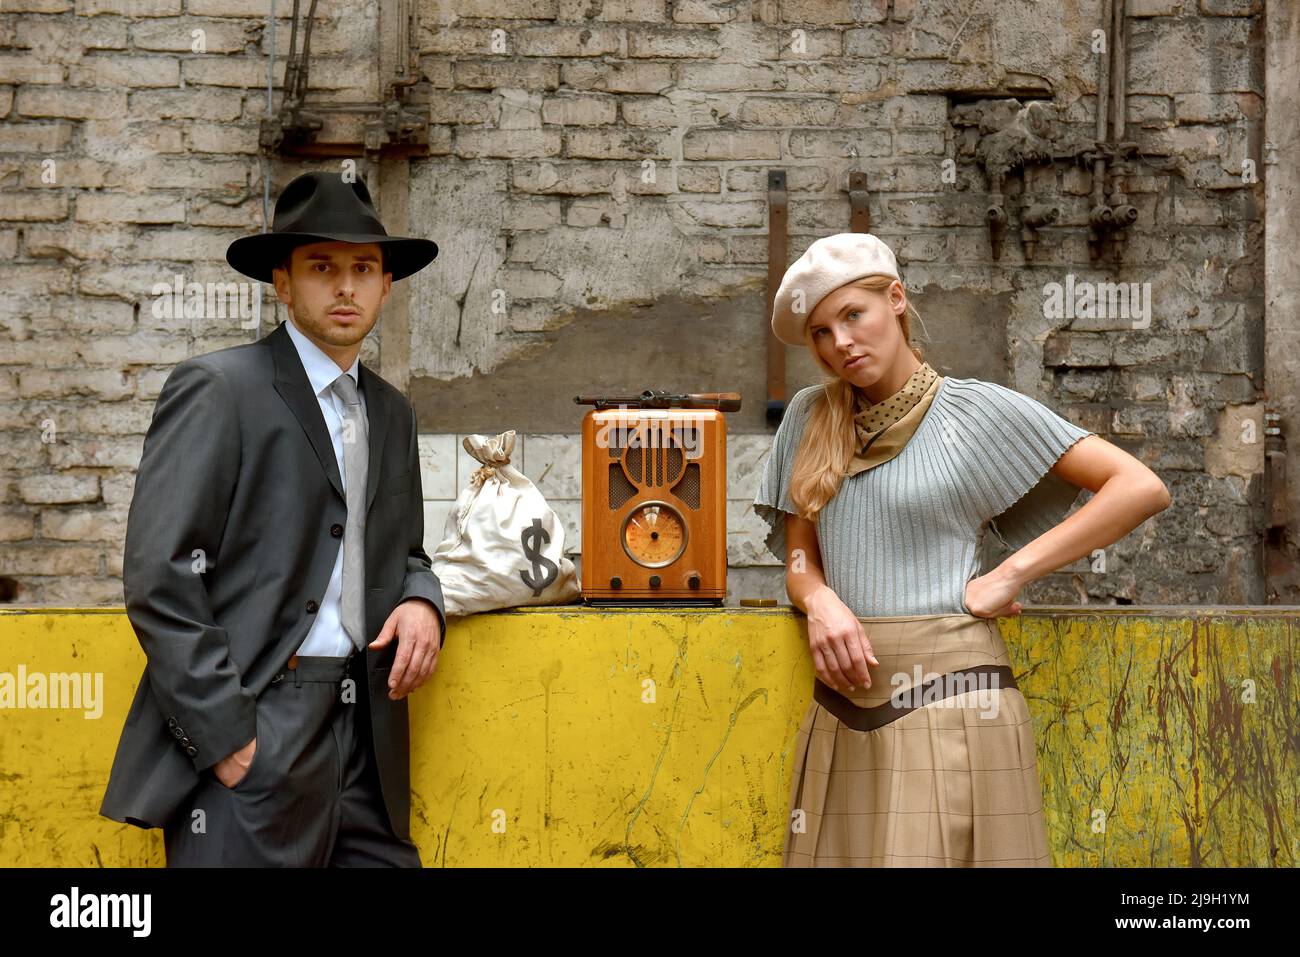 Ein junges Paar zieht sich in Kleidung im Stil von 1930 an. Sie tragen jeweils eine Waffe, während sie die Rolle des berühmten Gangsterduos Bonnie und Clyde übernehmen. Stockfoto